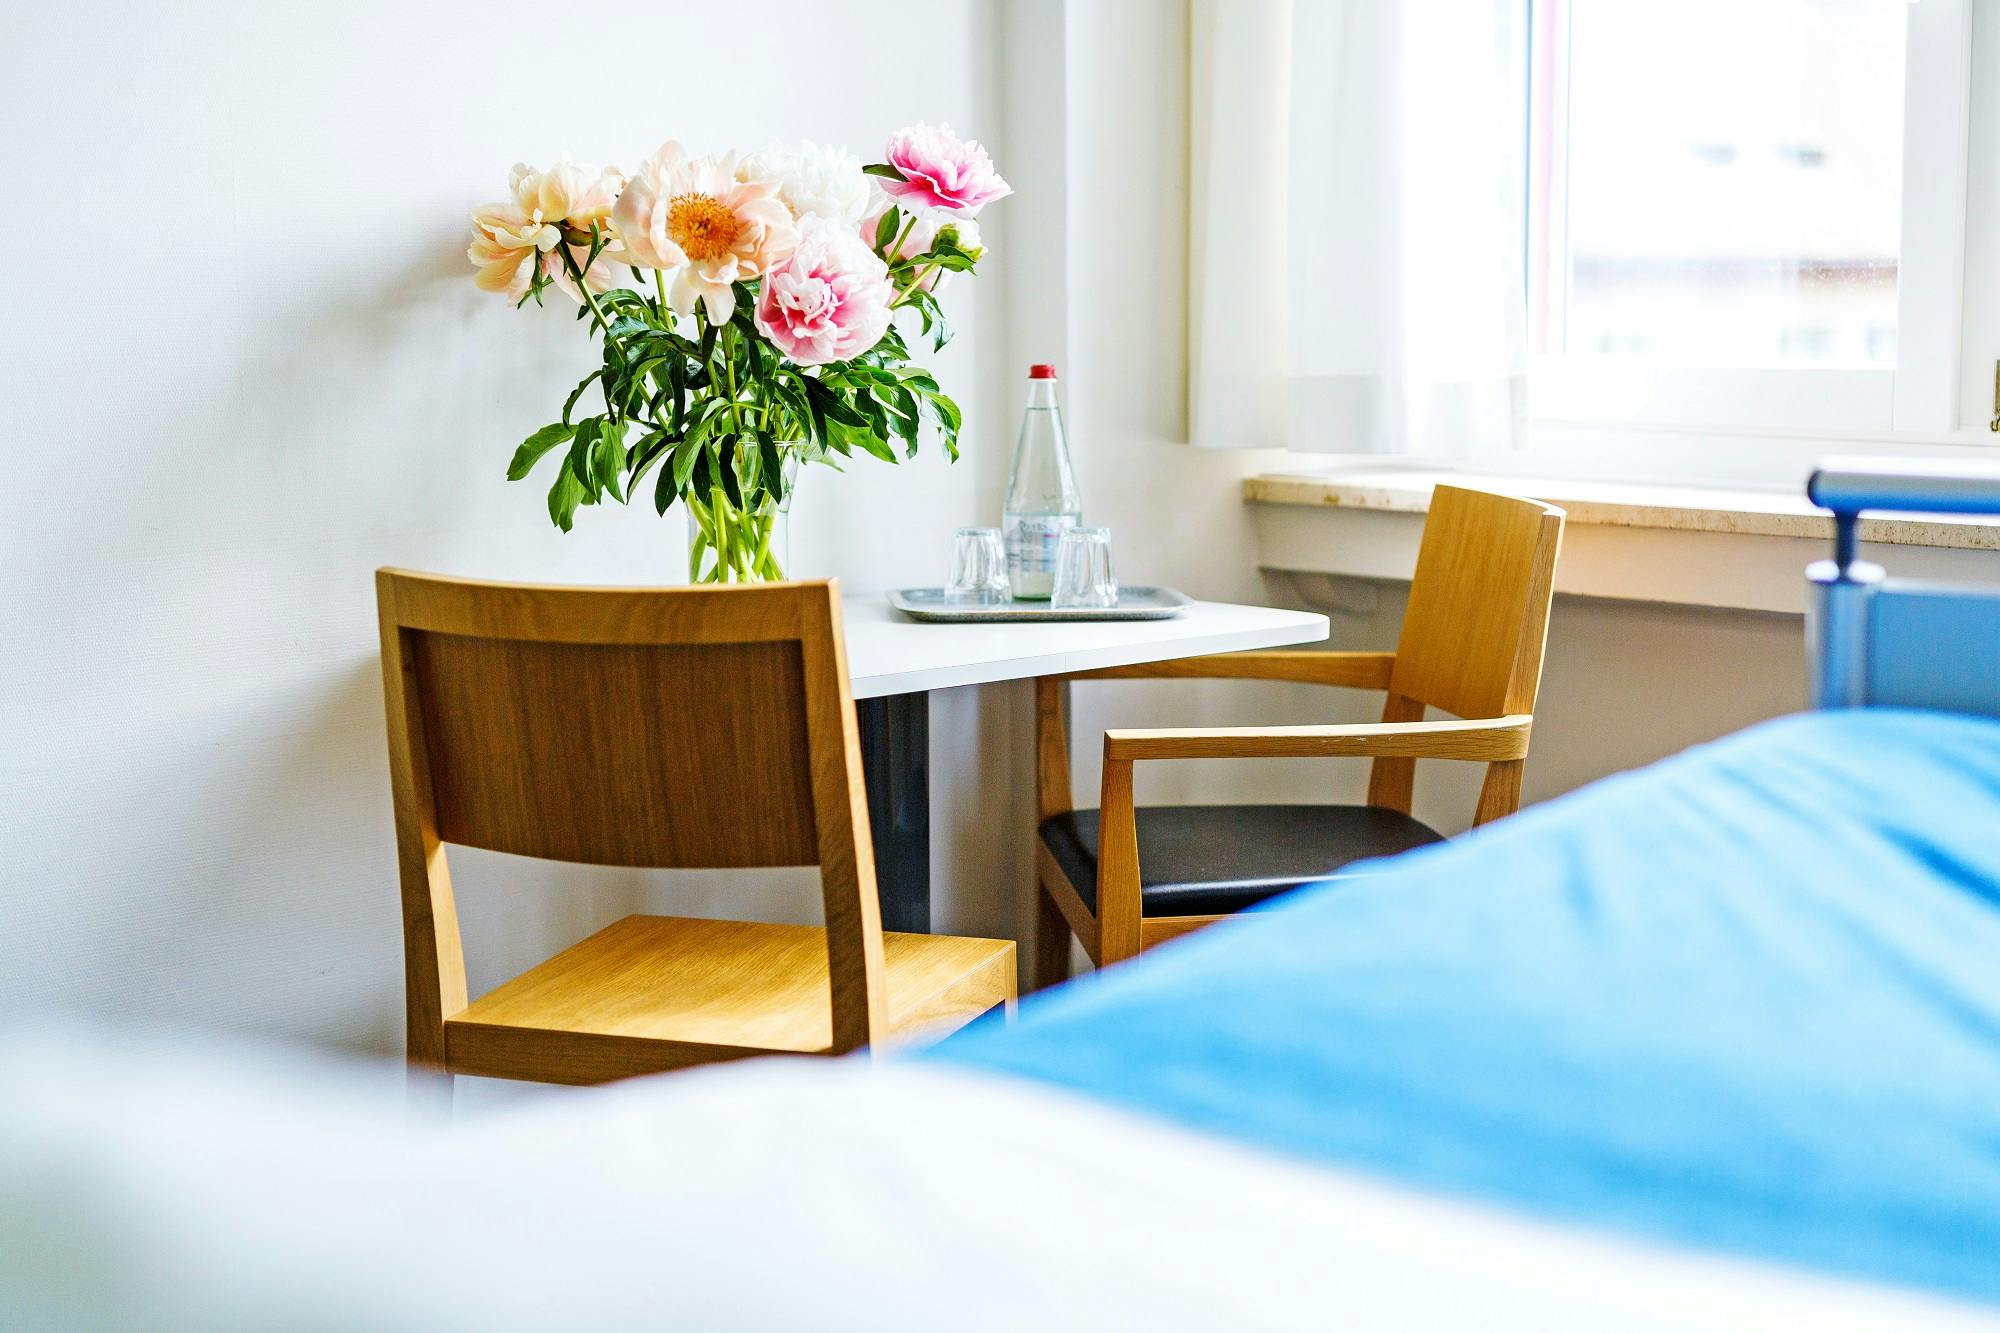 Helles Zimmer mit Blumenstrauß auf Tisch und modernen Holzstühlen.